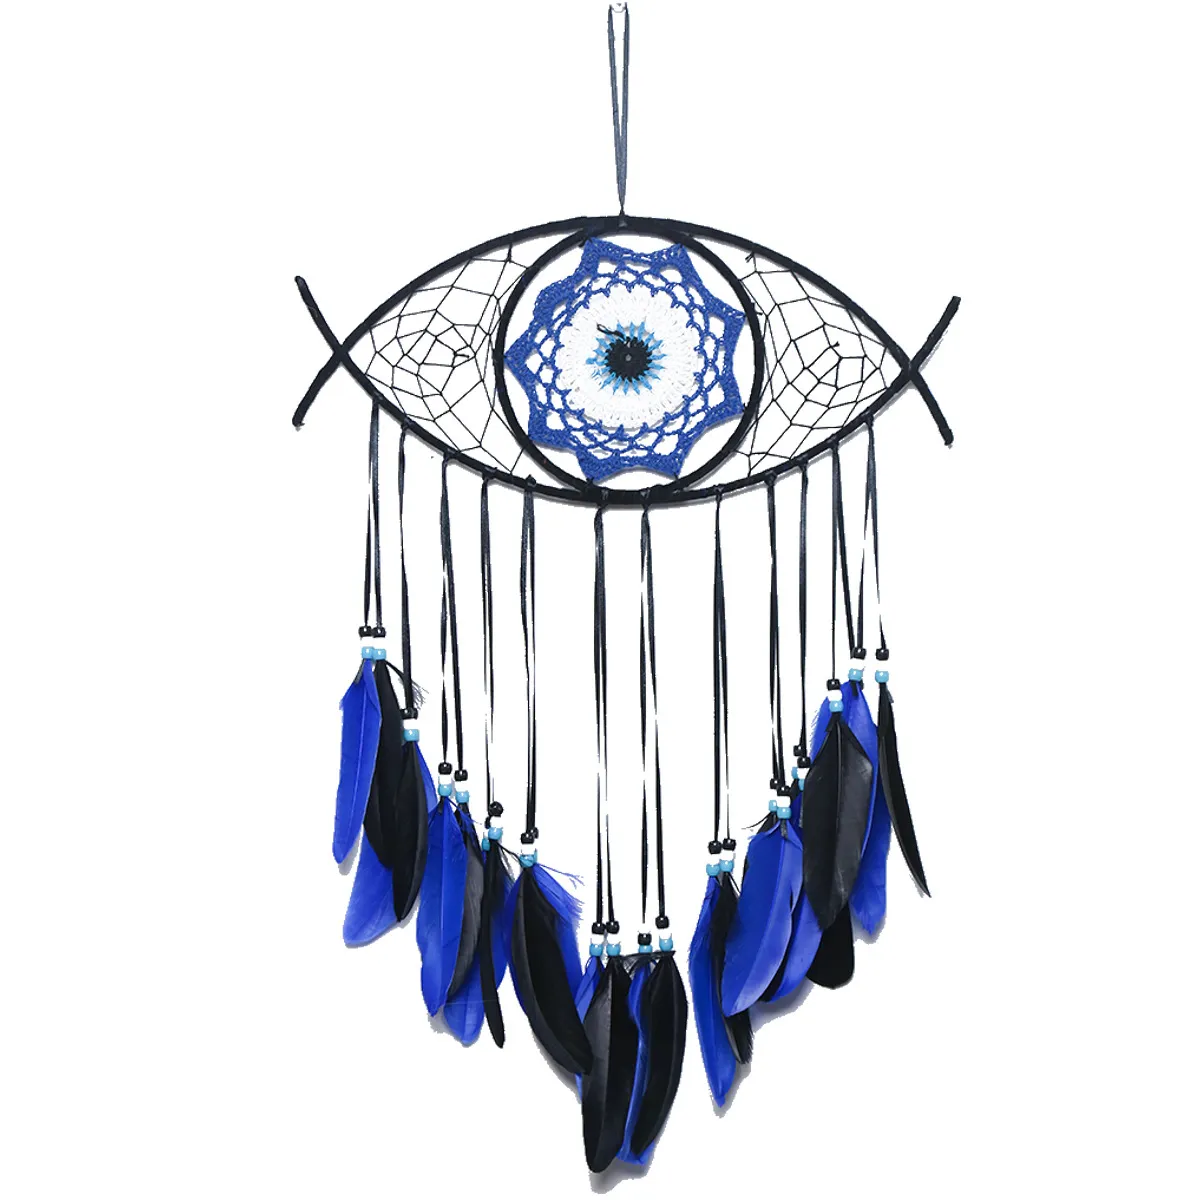 Großhandel handgemachte böhmische weiße blaue Feder böse Auge Traum fänger Handwerk Ornament Home Wandbehang Dekor Home Deco